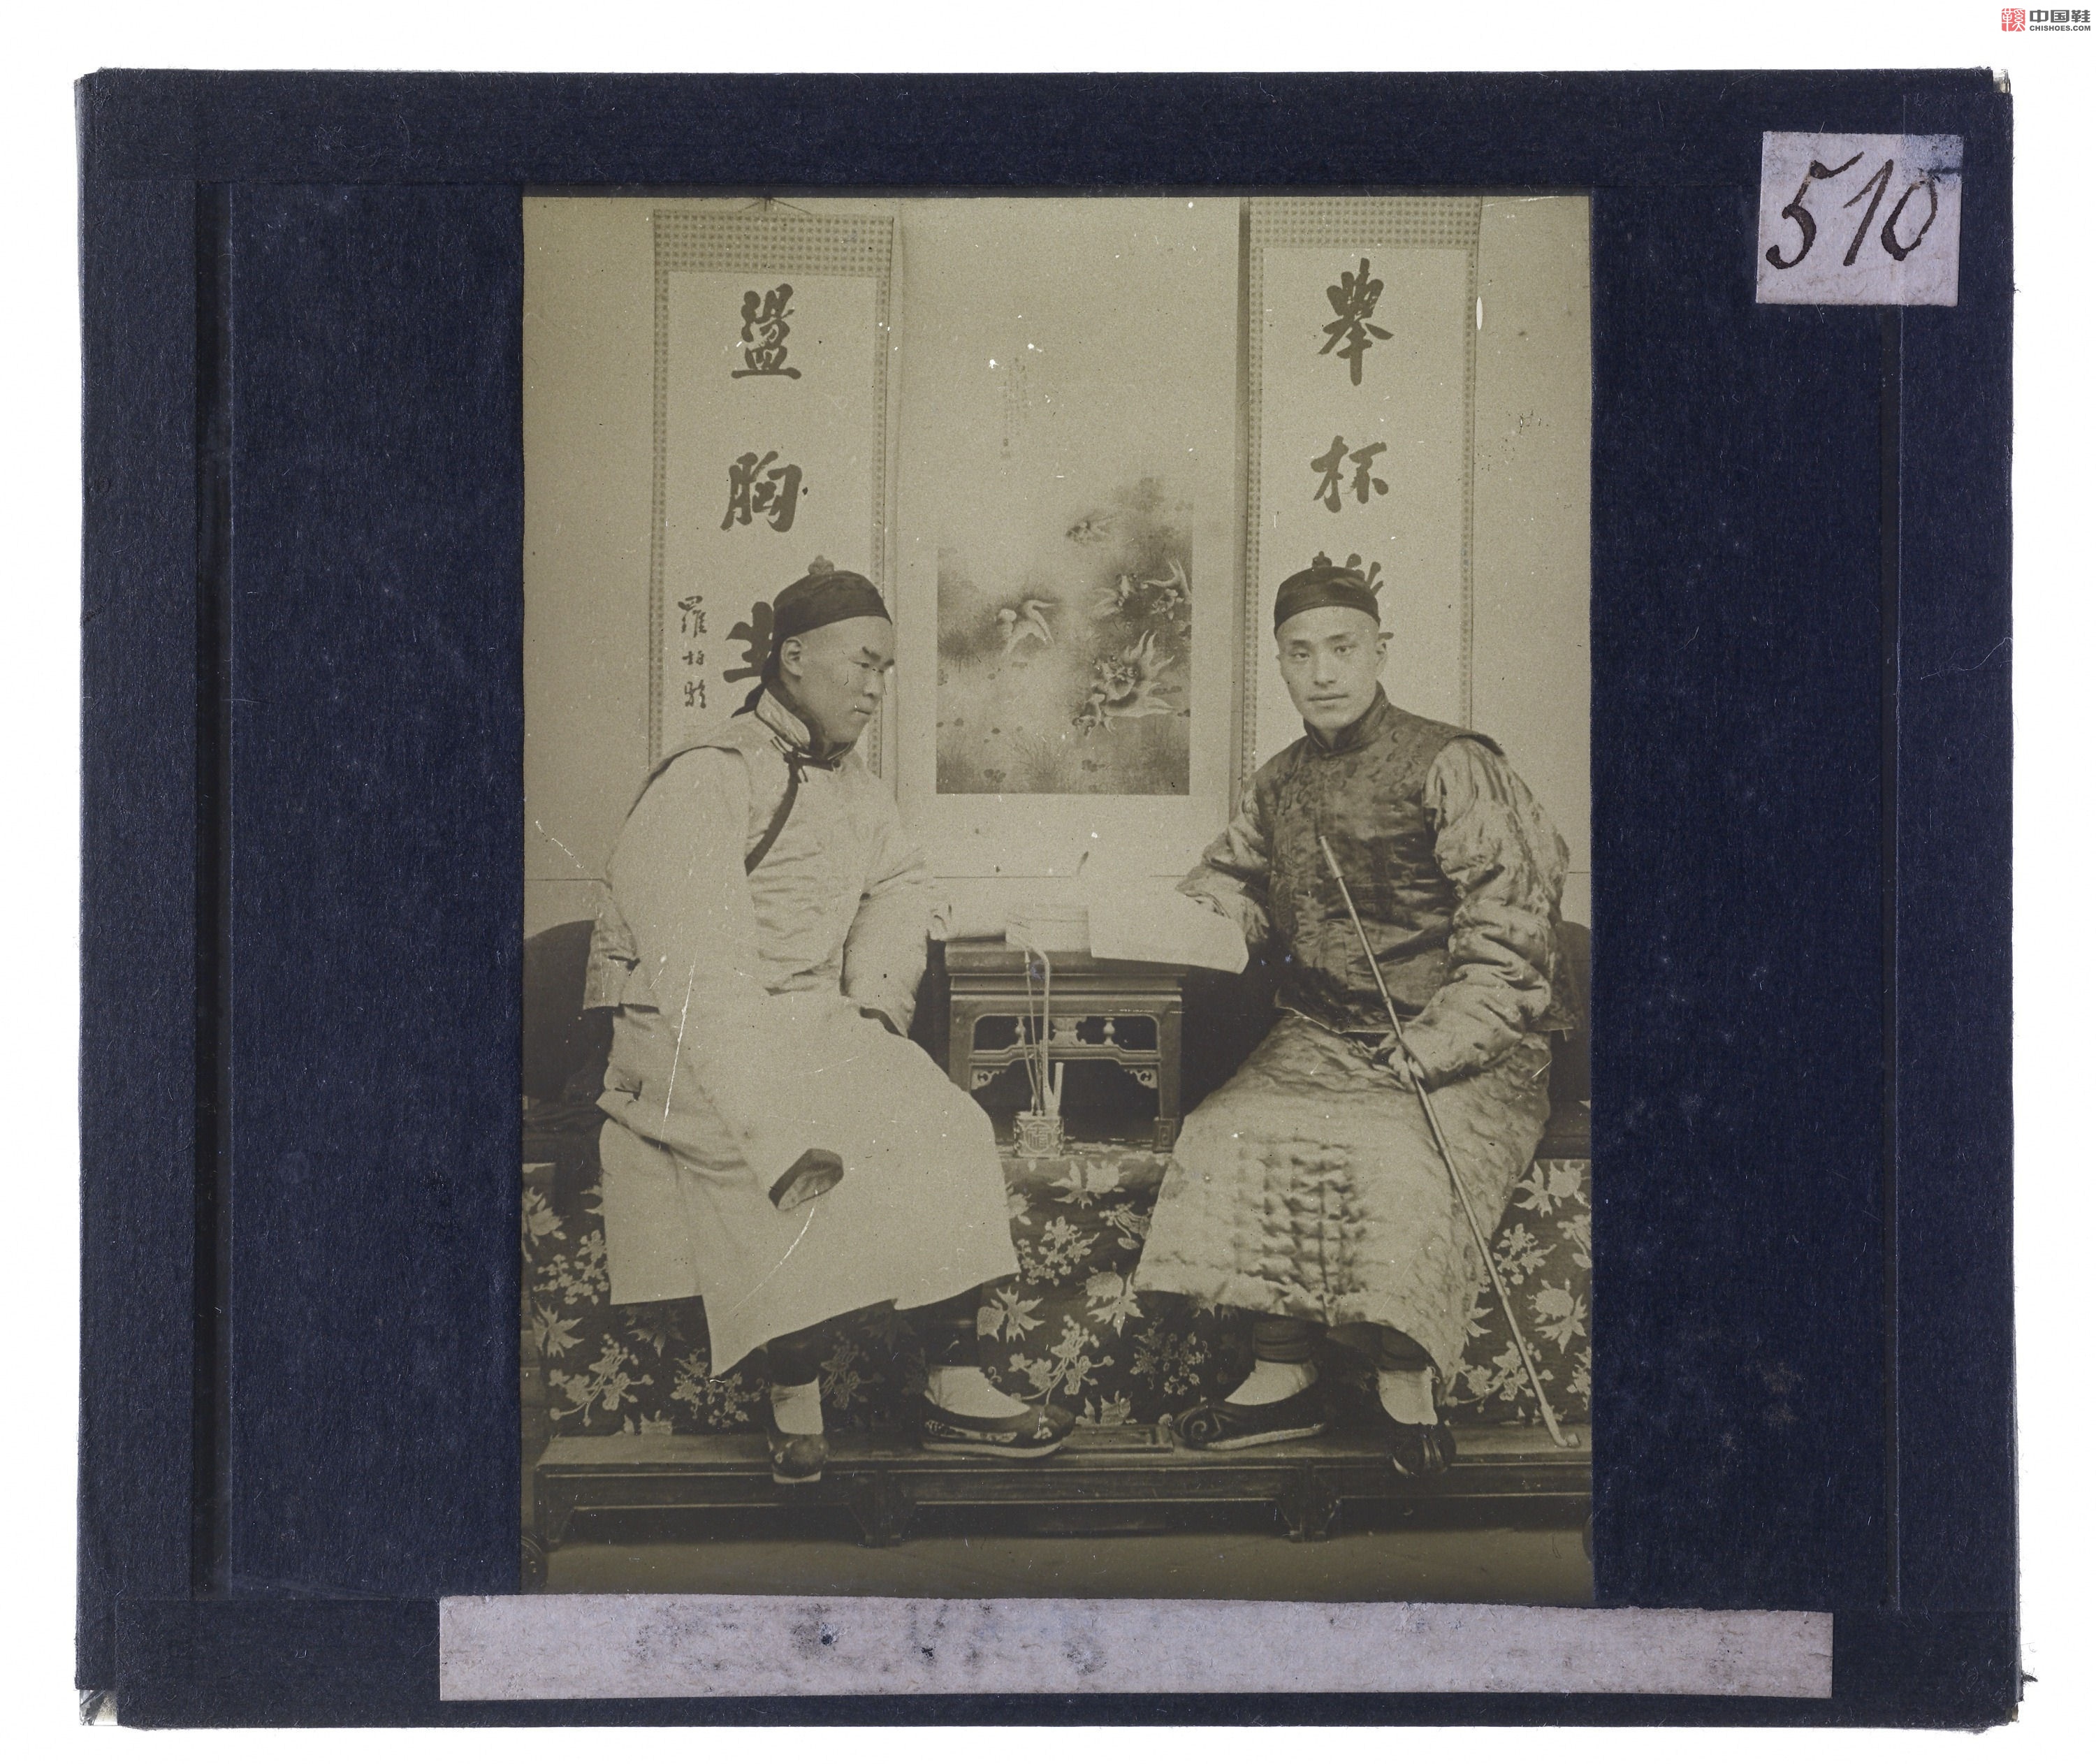 梅荫华的二十世纪初中国影像.By Michel De Maynard.230幅.1906-1912年_Page_227.jpg